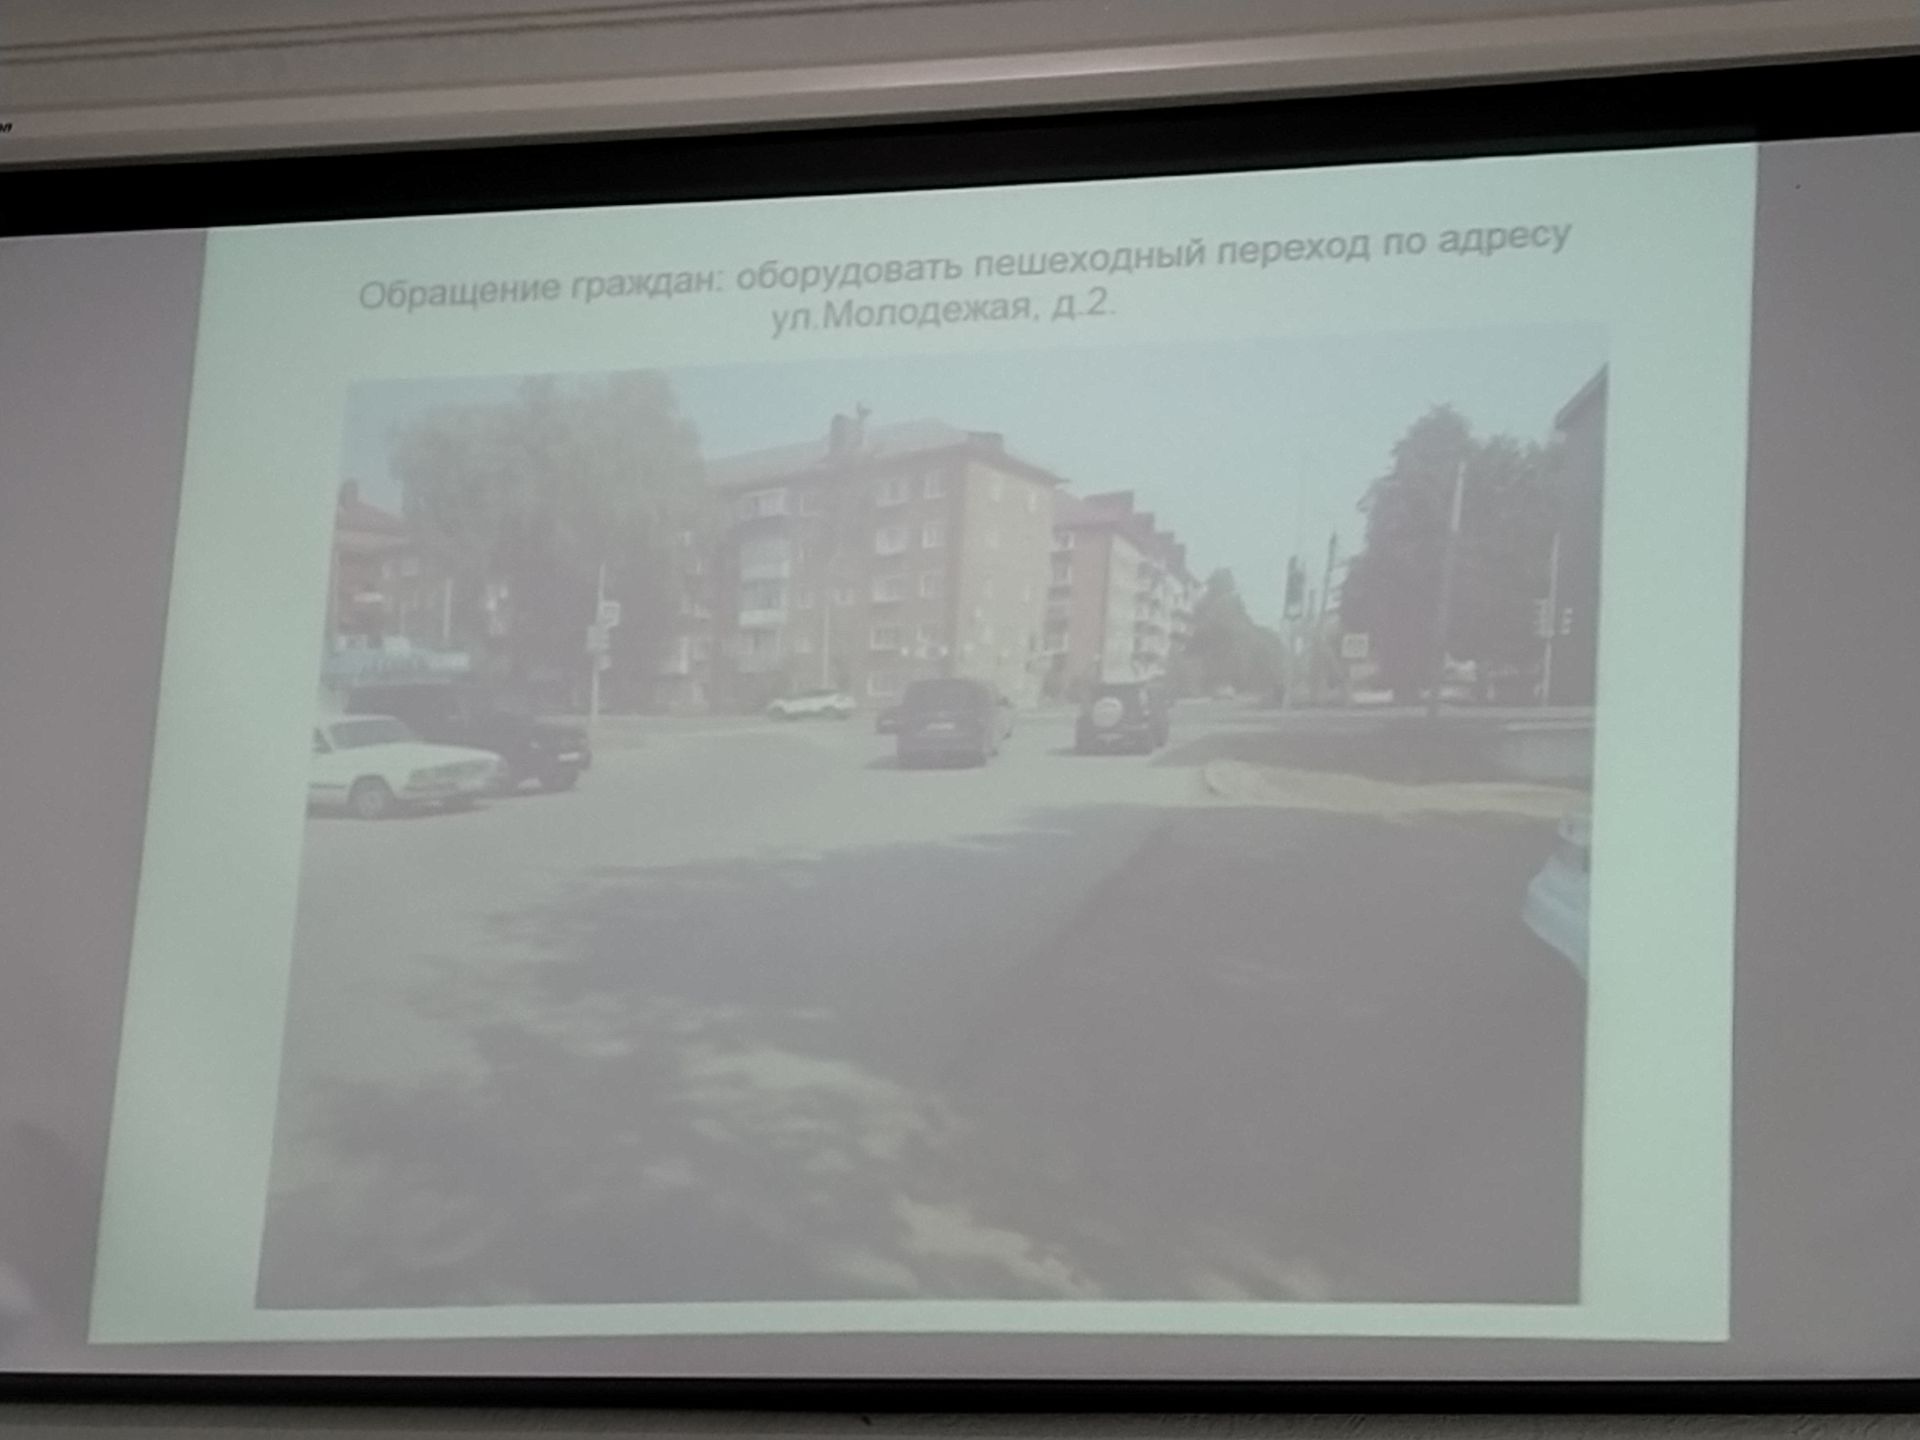 Комиссия по БДД обсудила вопросы аварийности на дорогах в Чистополе по вине водителей-новичков